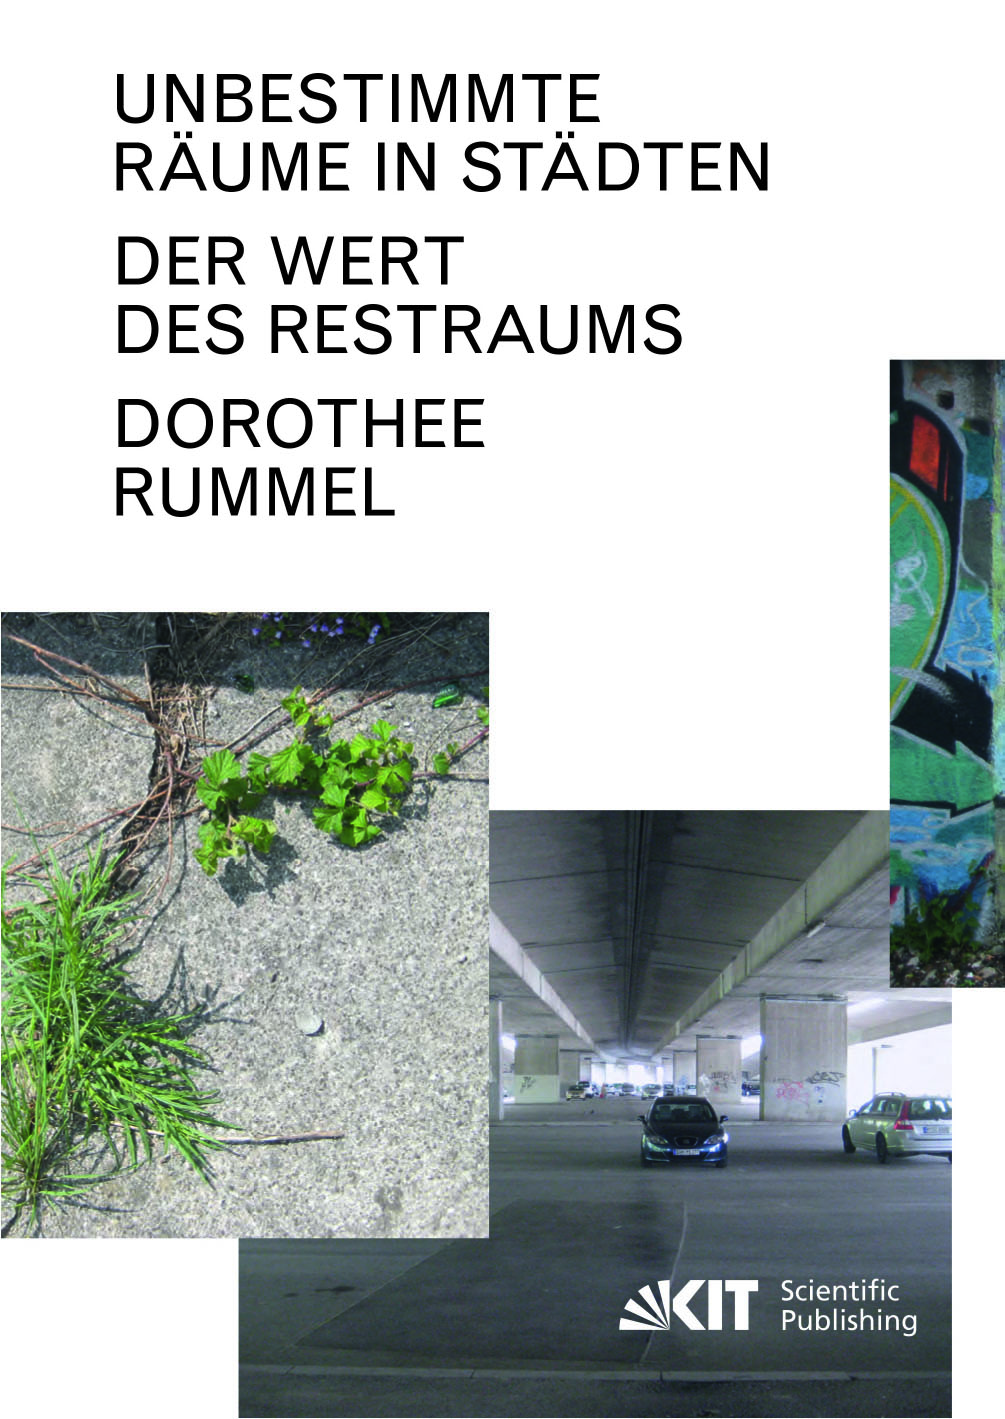 Dorothee Rummel